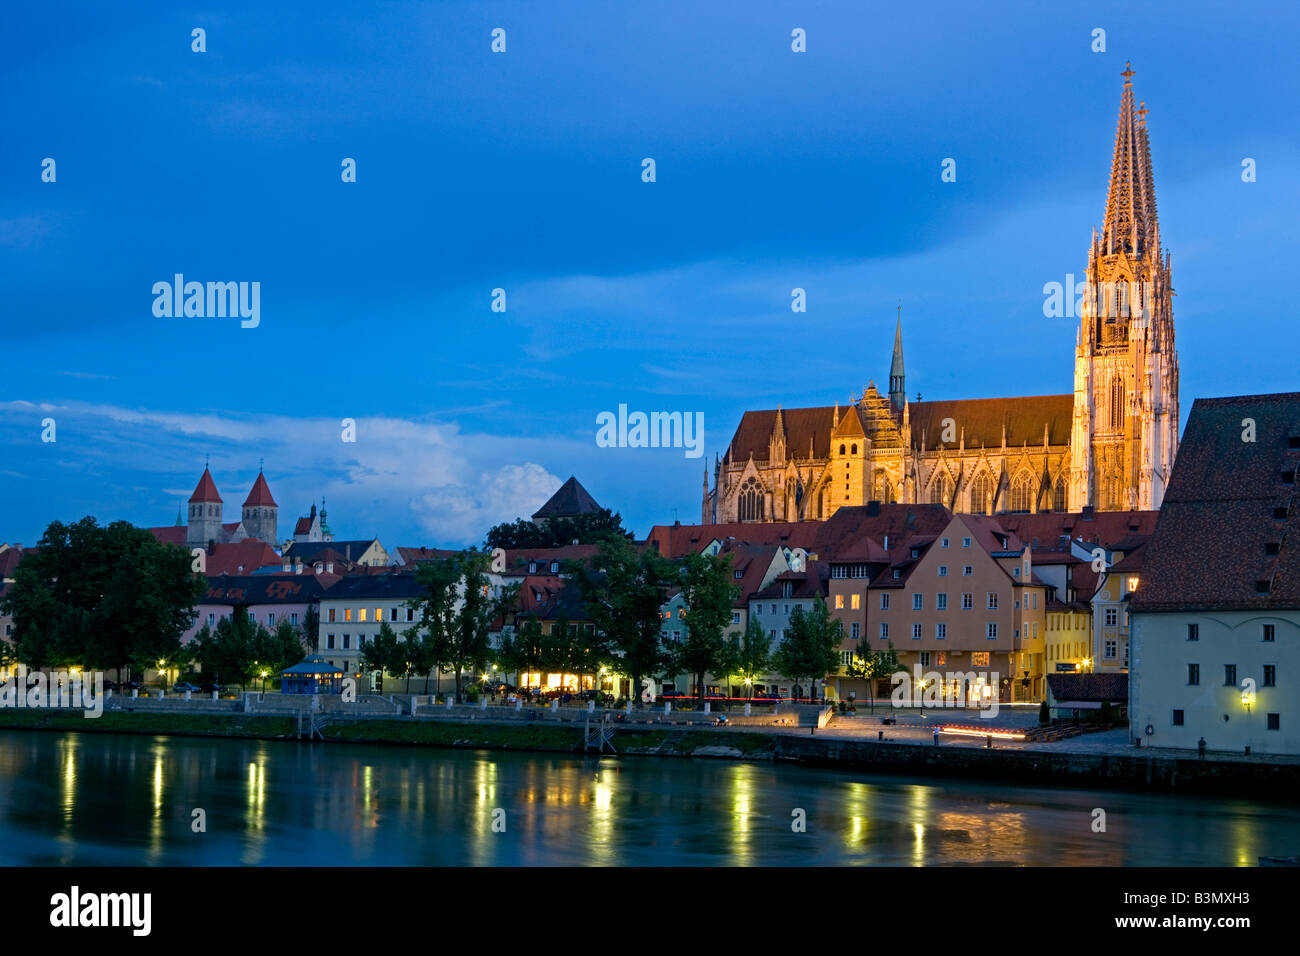 Deutschland, Bayern, Regensburger Dom bei Nacht, el río Danubio y la catedral de San Pedro, Regensburg, Alemania Foto de stock